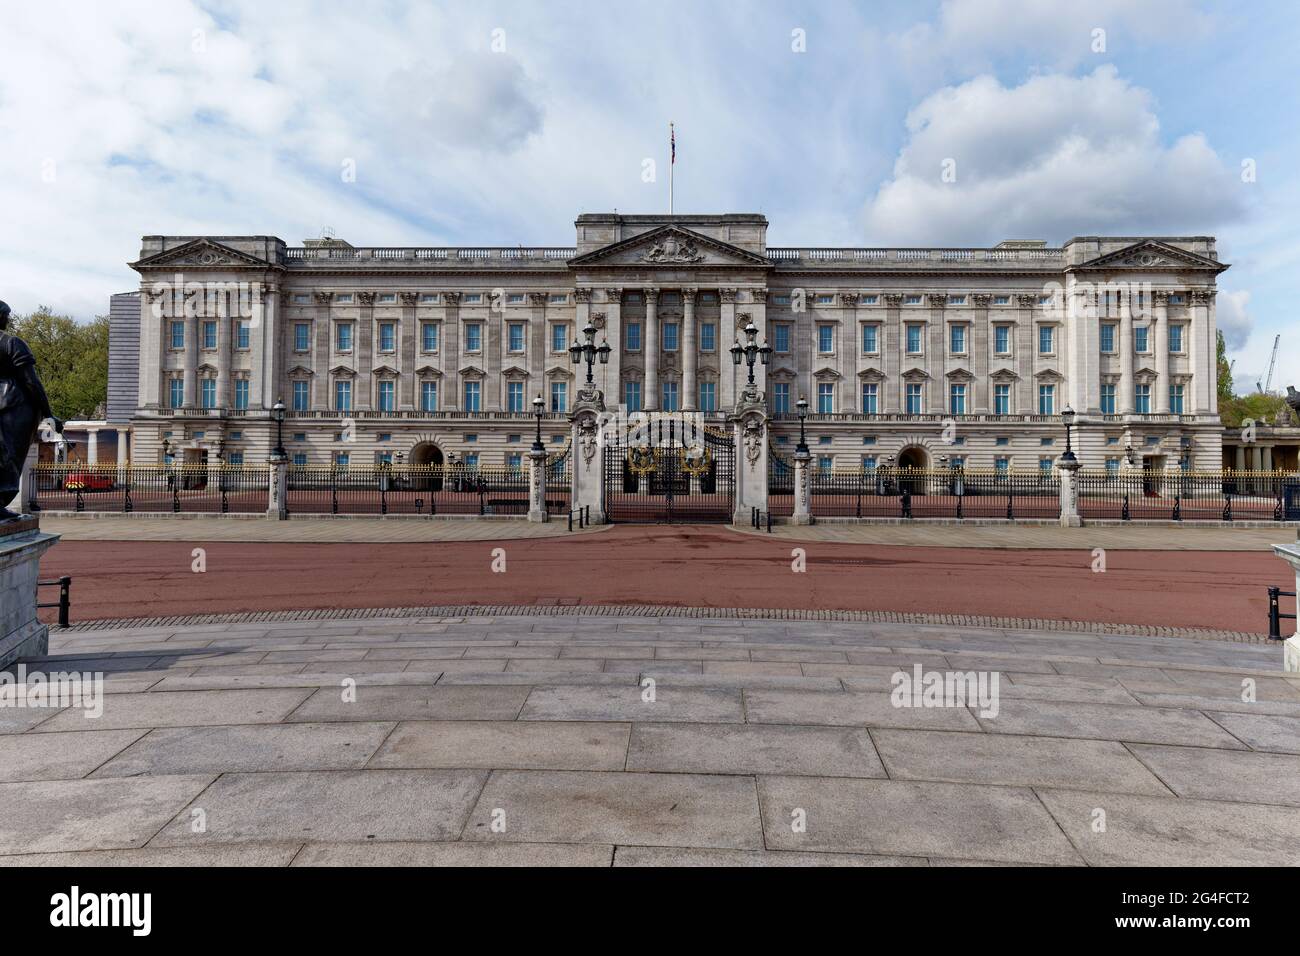 Buckingham Palace, la residenza reale della Regina del Regno Unito, si trova ad un'estremità del Mall nel centro di Londra Foto Stock